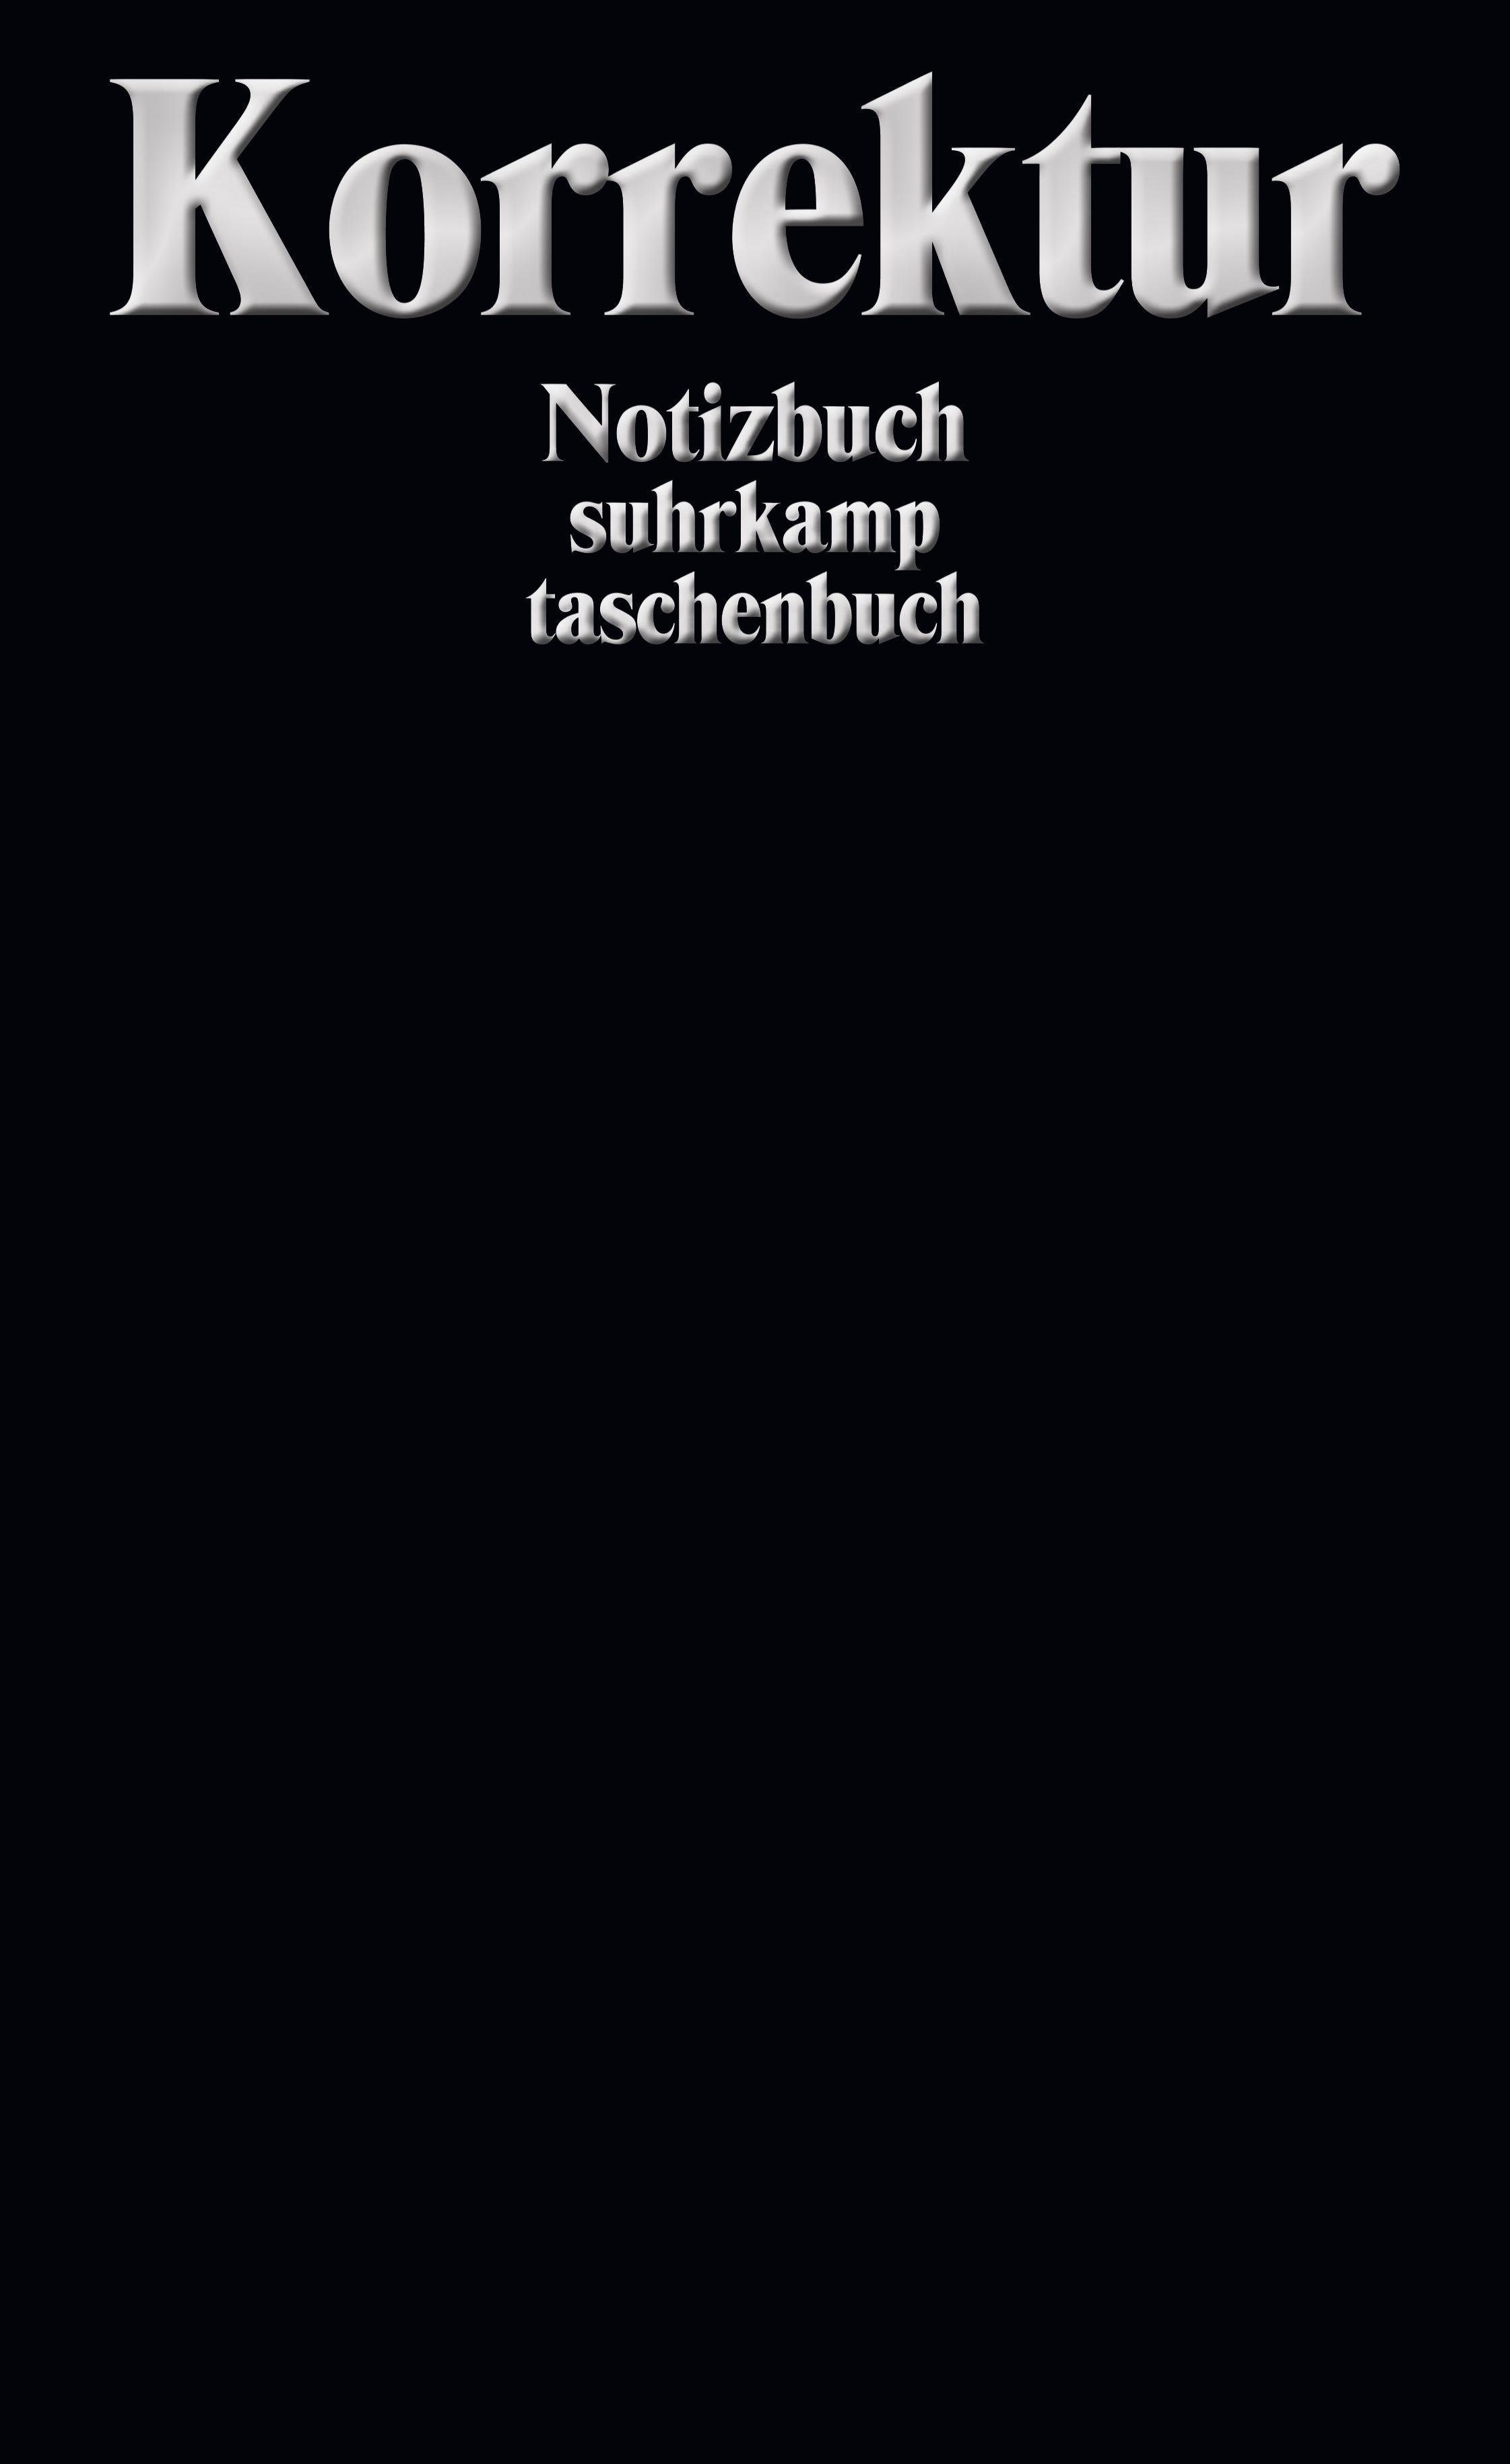 Suhrkamp Verlag Notizbuch Korrektur Notizbuch